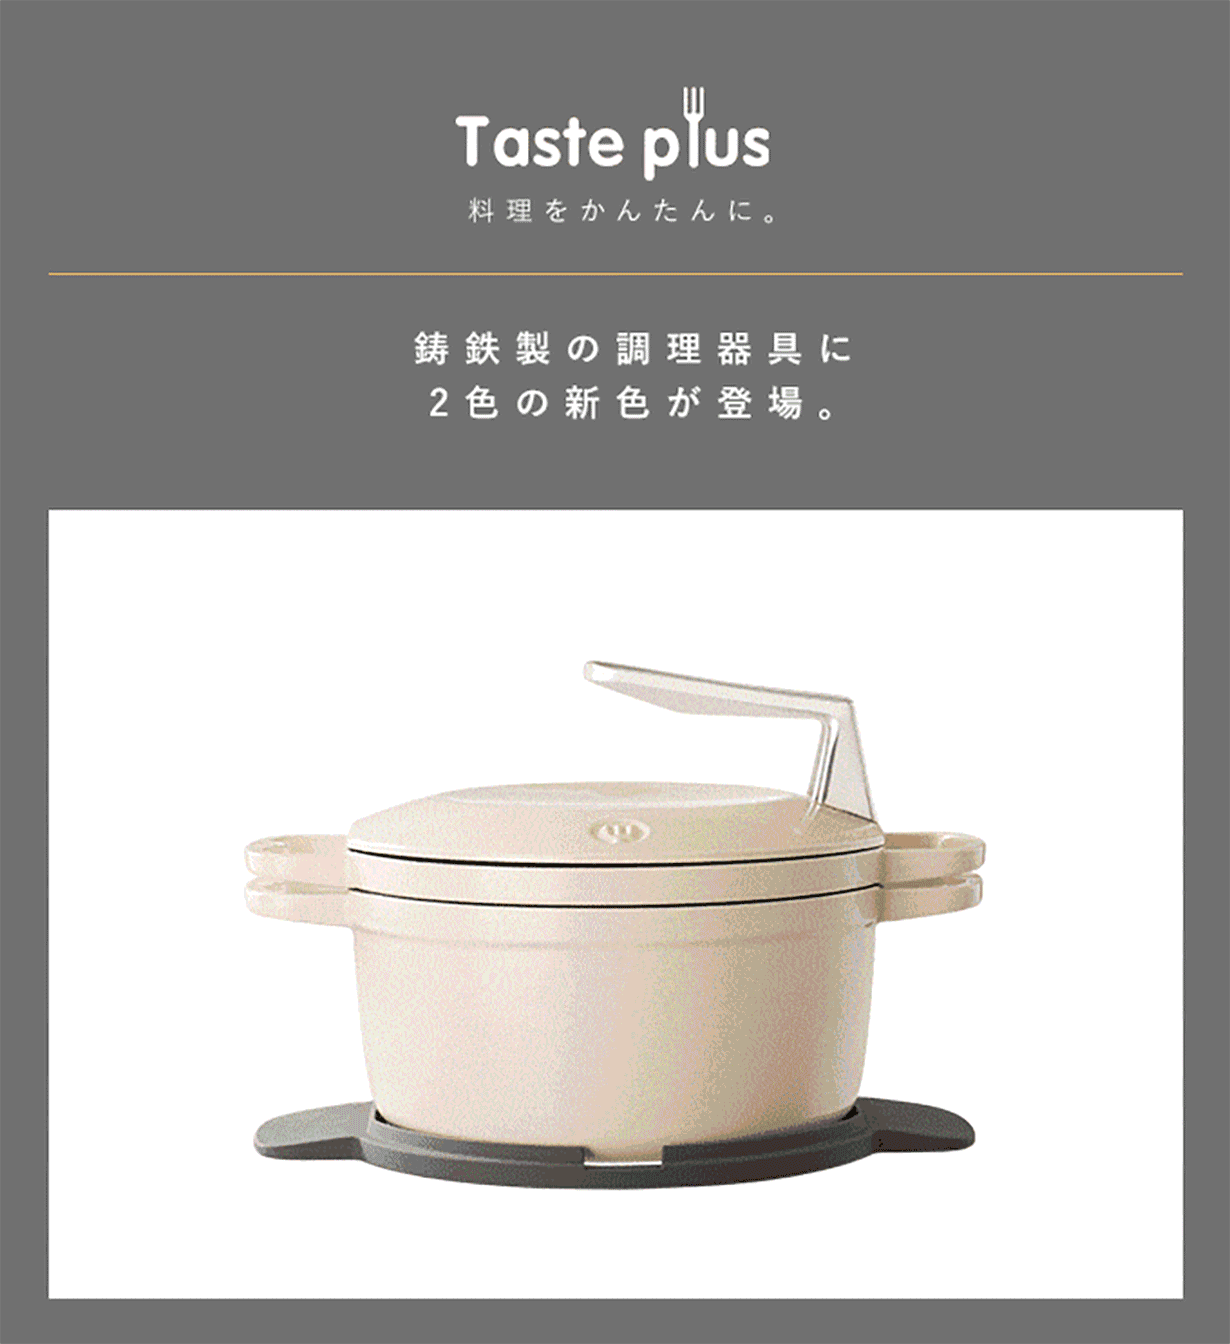 1台で9種の調理』重ねて収納できるTastePlus鋳物ホーロー鍋がMakuakeにて先行予約販売開始！ | BP株式会社のプレスリリース